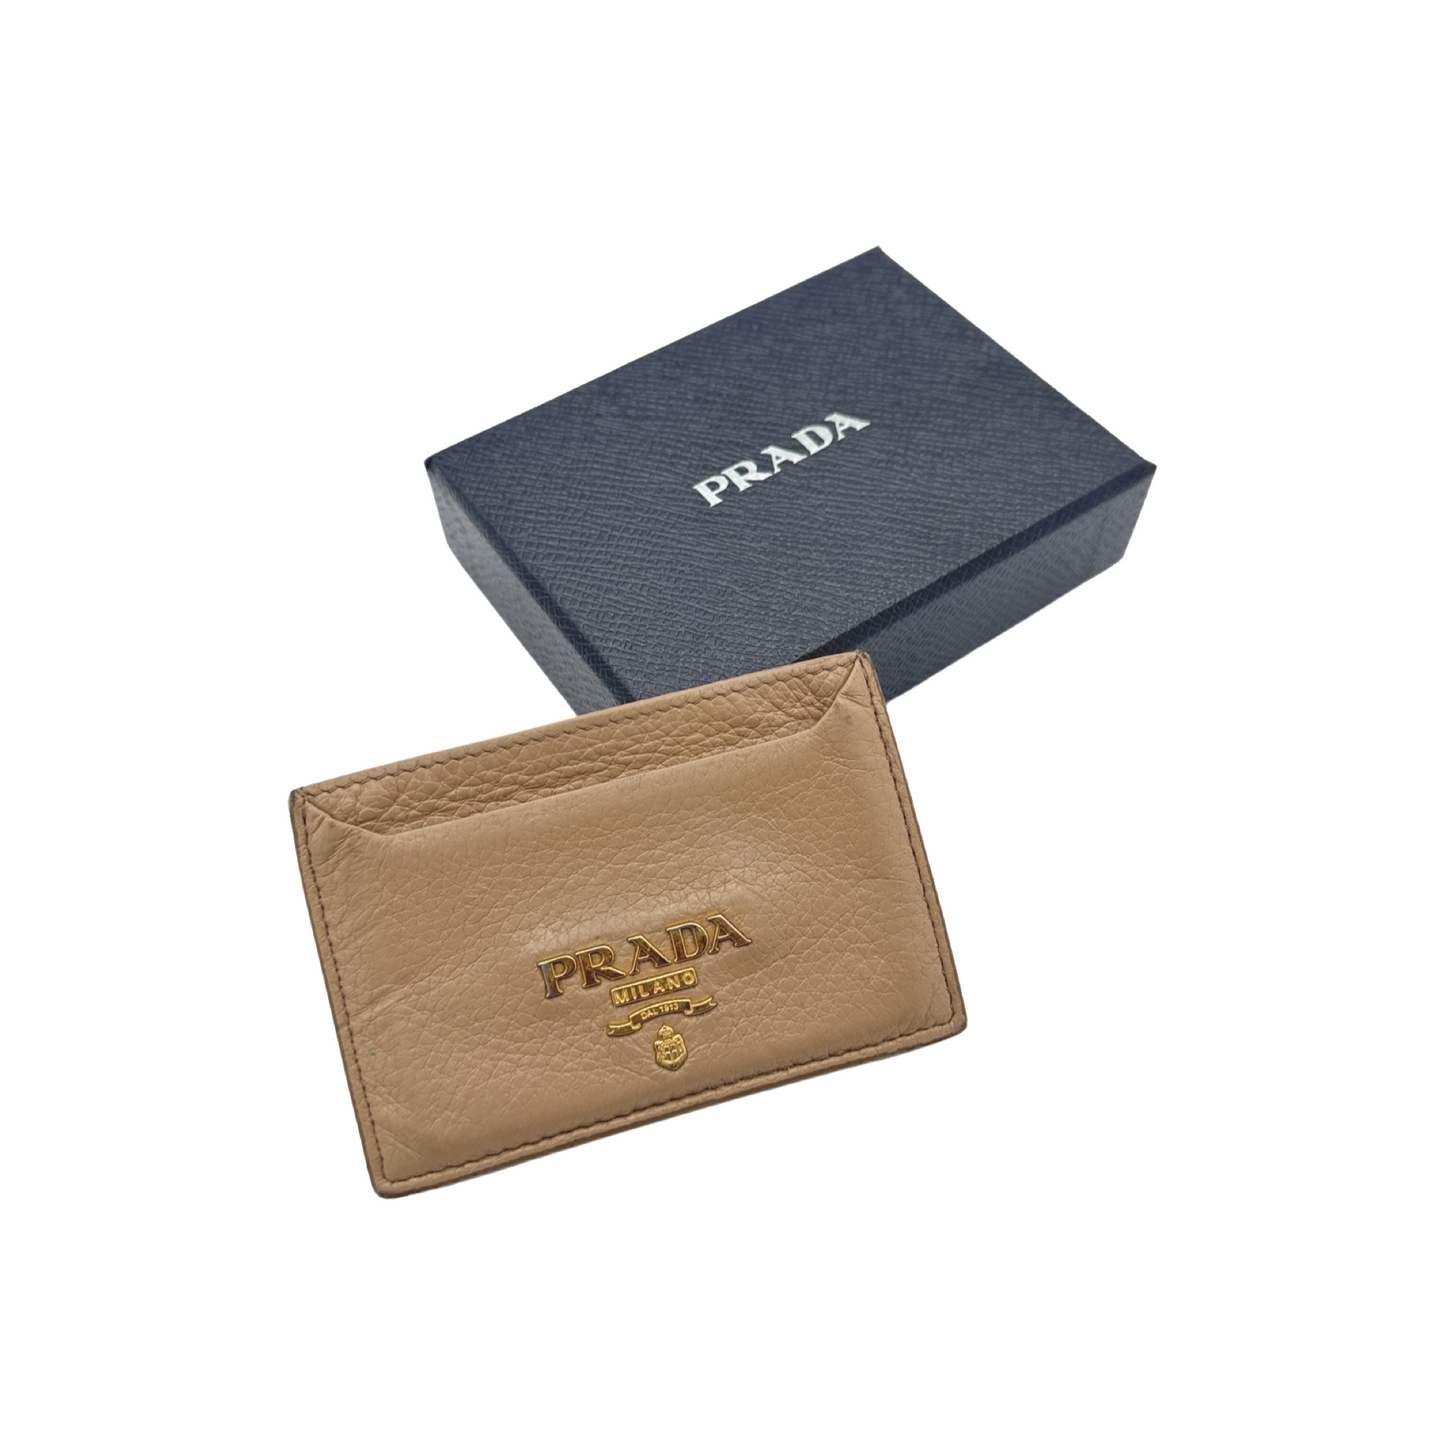 Prada Card Holder Tan (C)